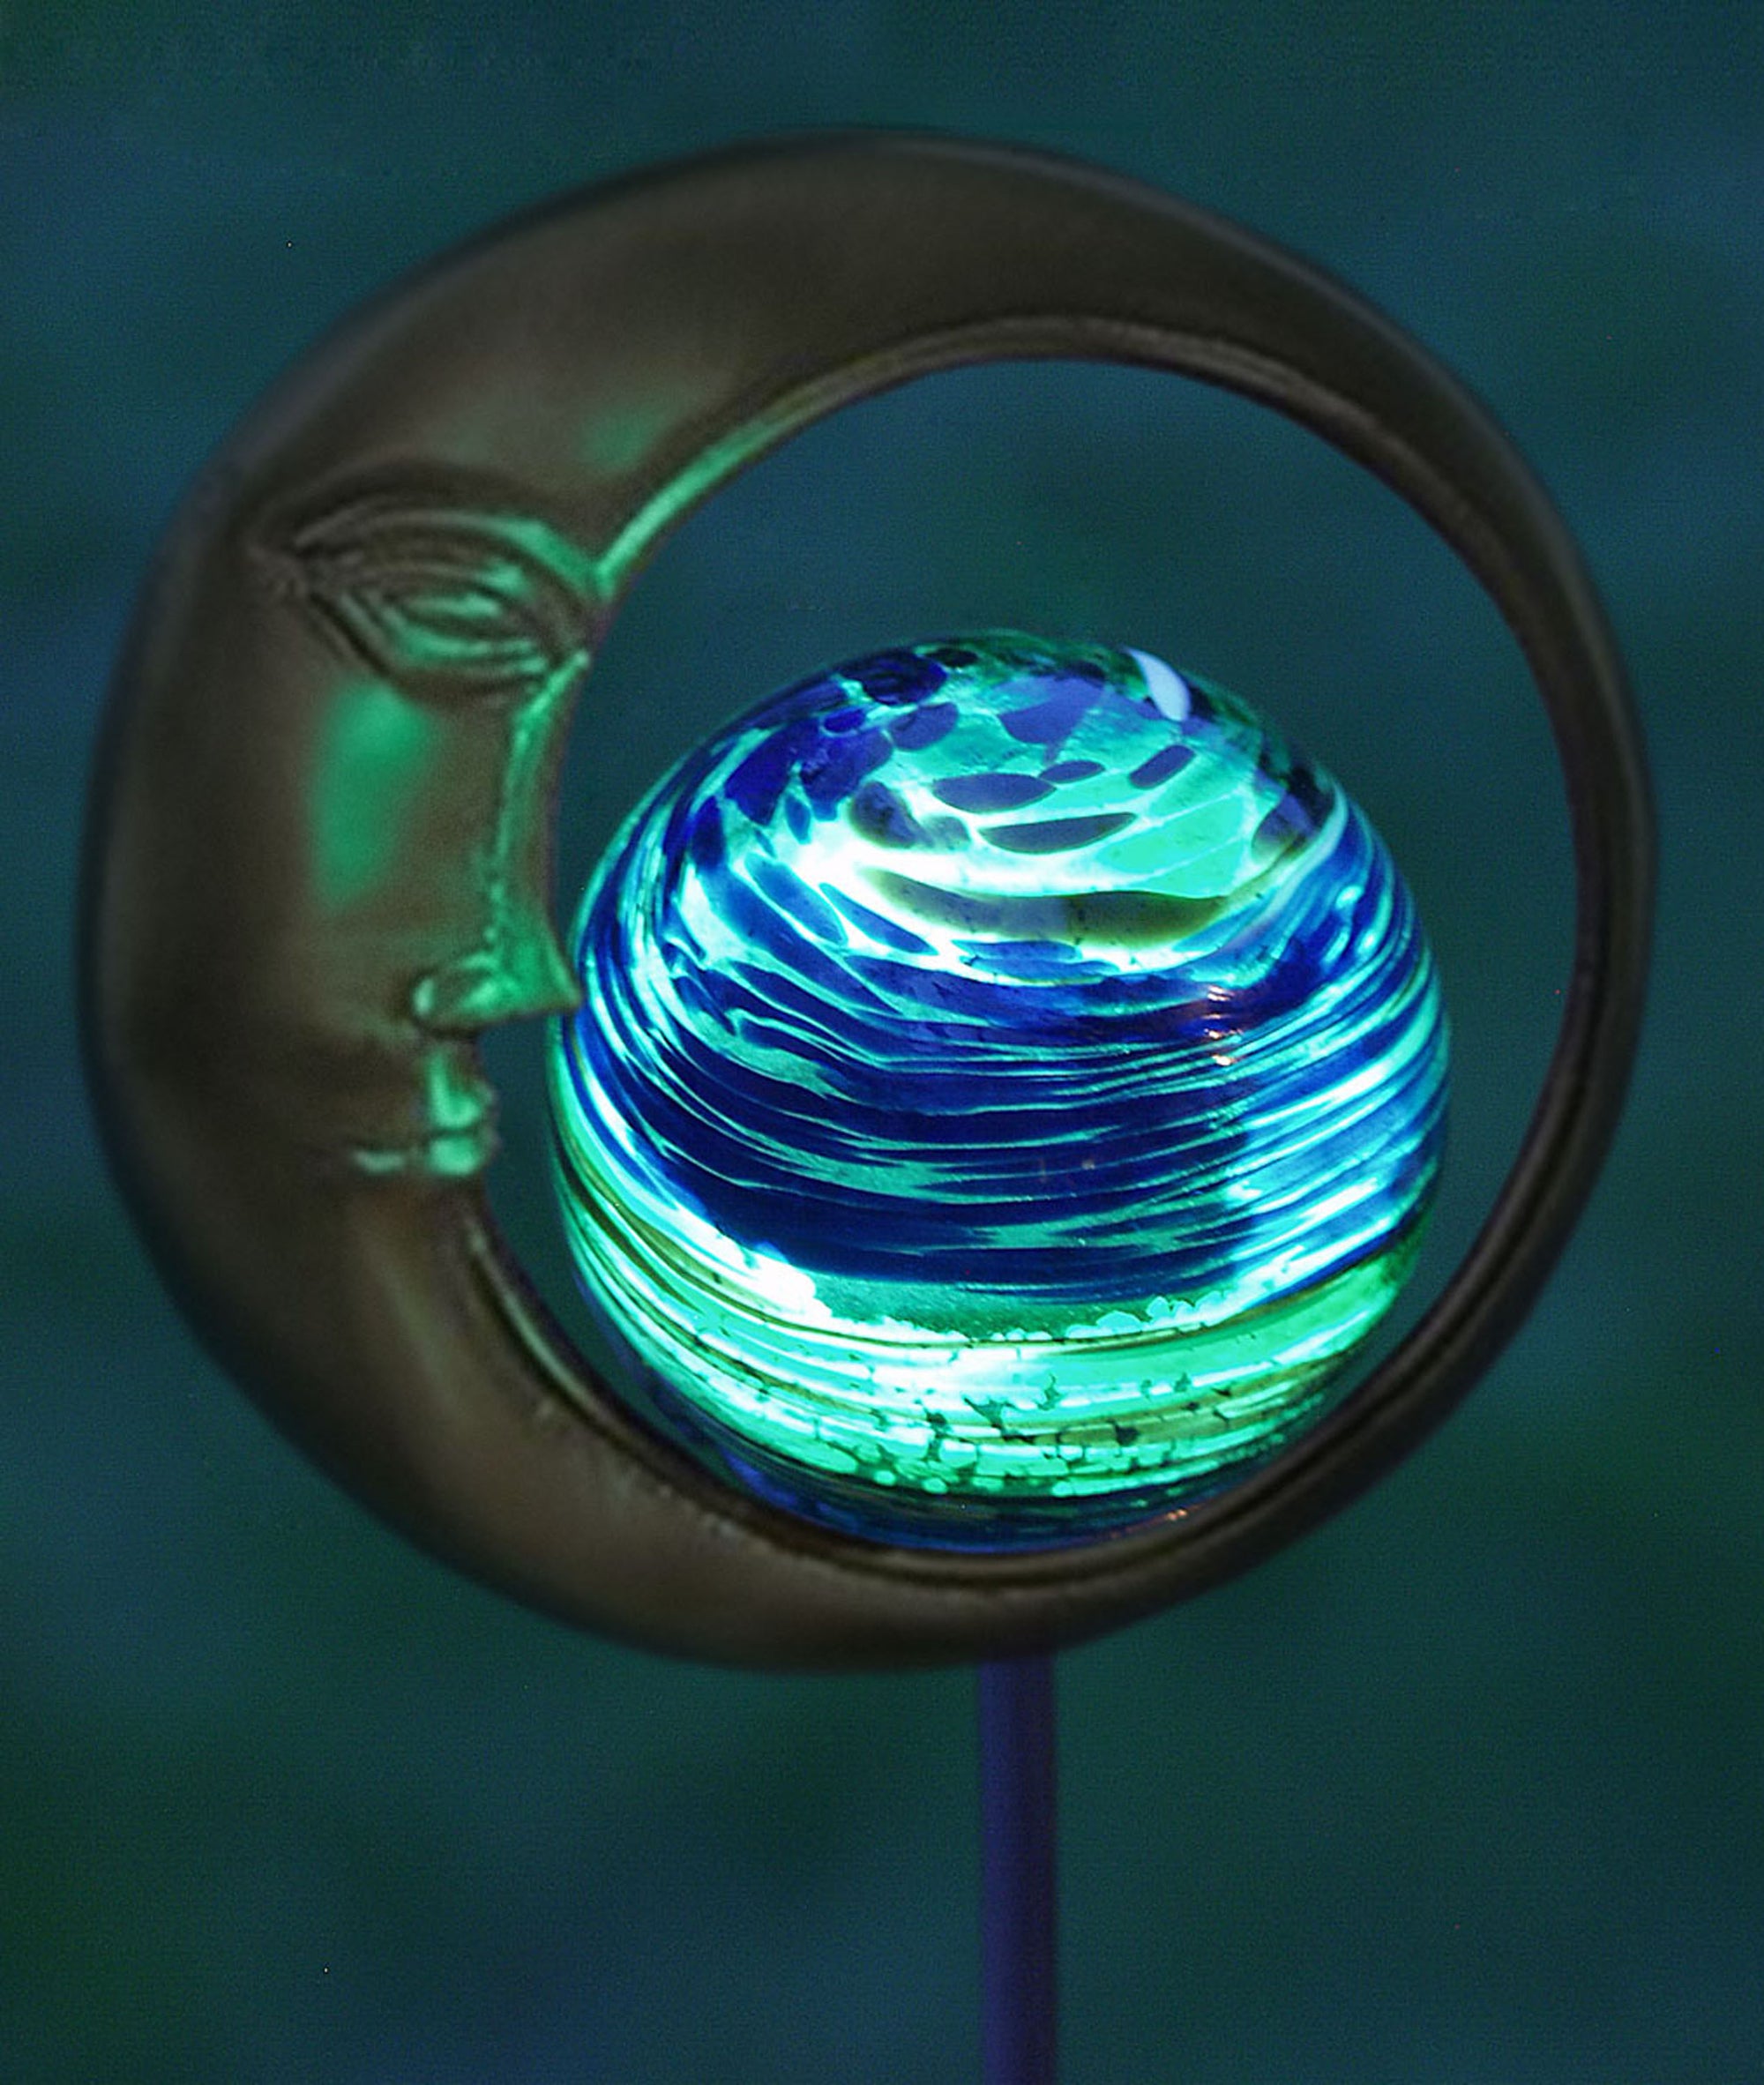 Replacement 2.5" Illuminarie Globe (Blue Swirl)